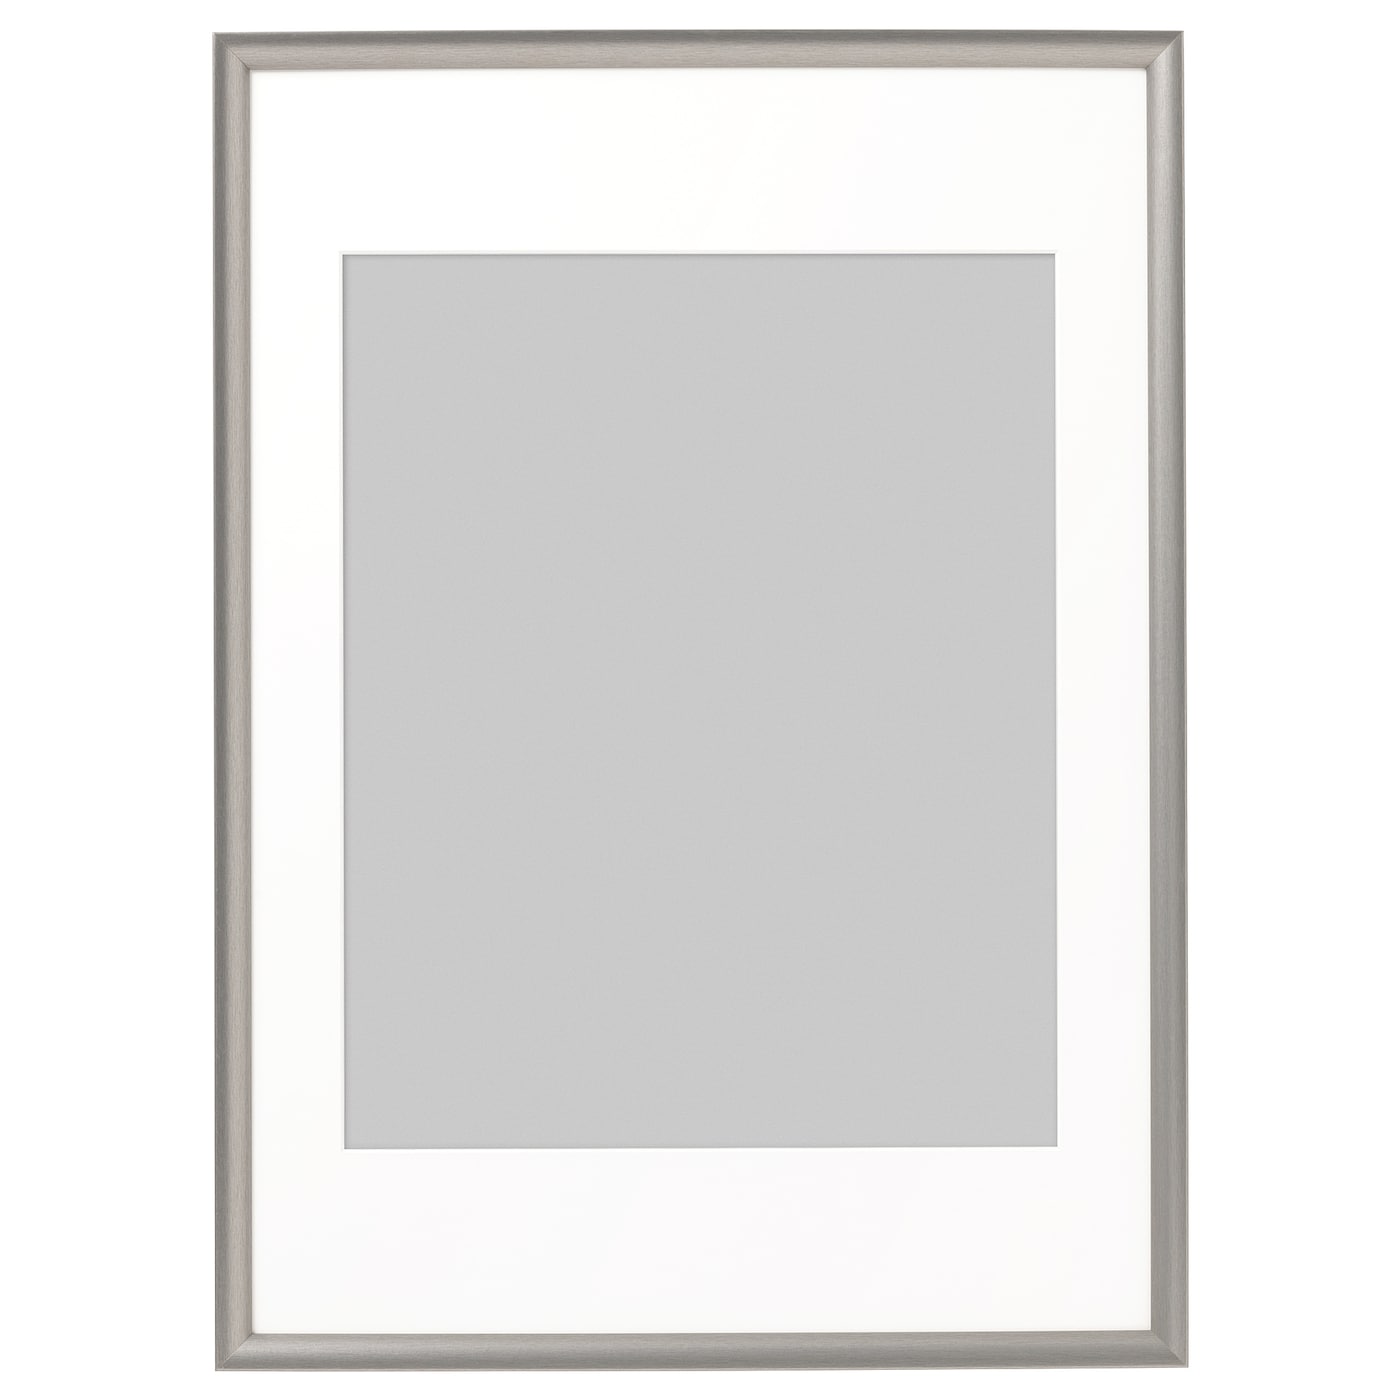 Рамка - IKEA SILVERHÖJDEN/SILVERHOJDEN, 50х70 см, серебряный цвет, СИЛВЕРХОЙДЕН ИКЕА